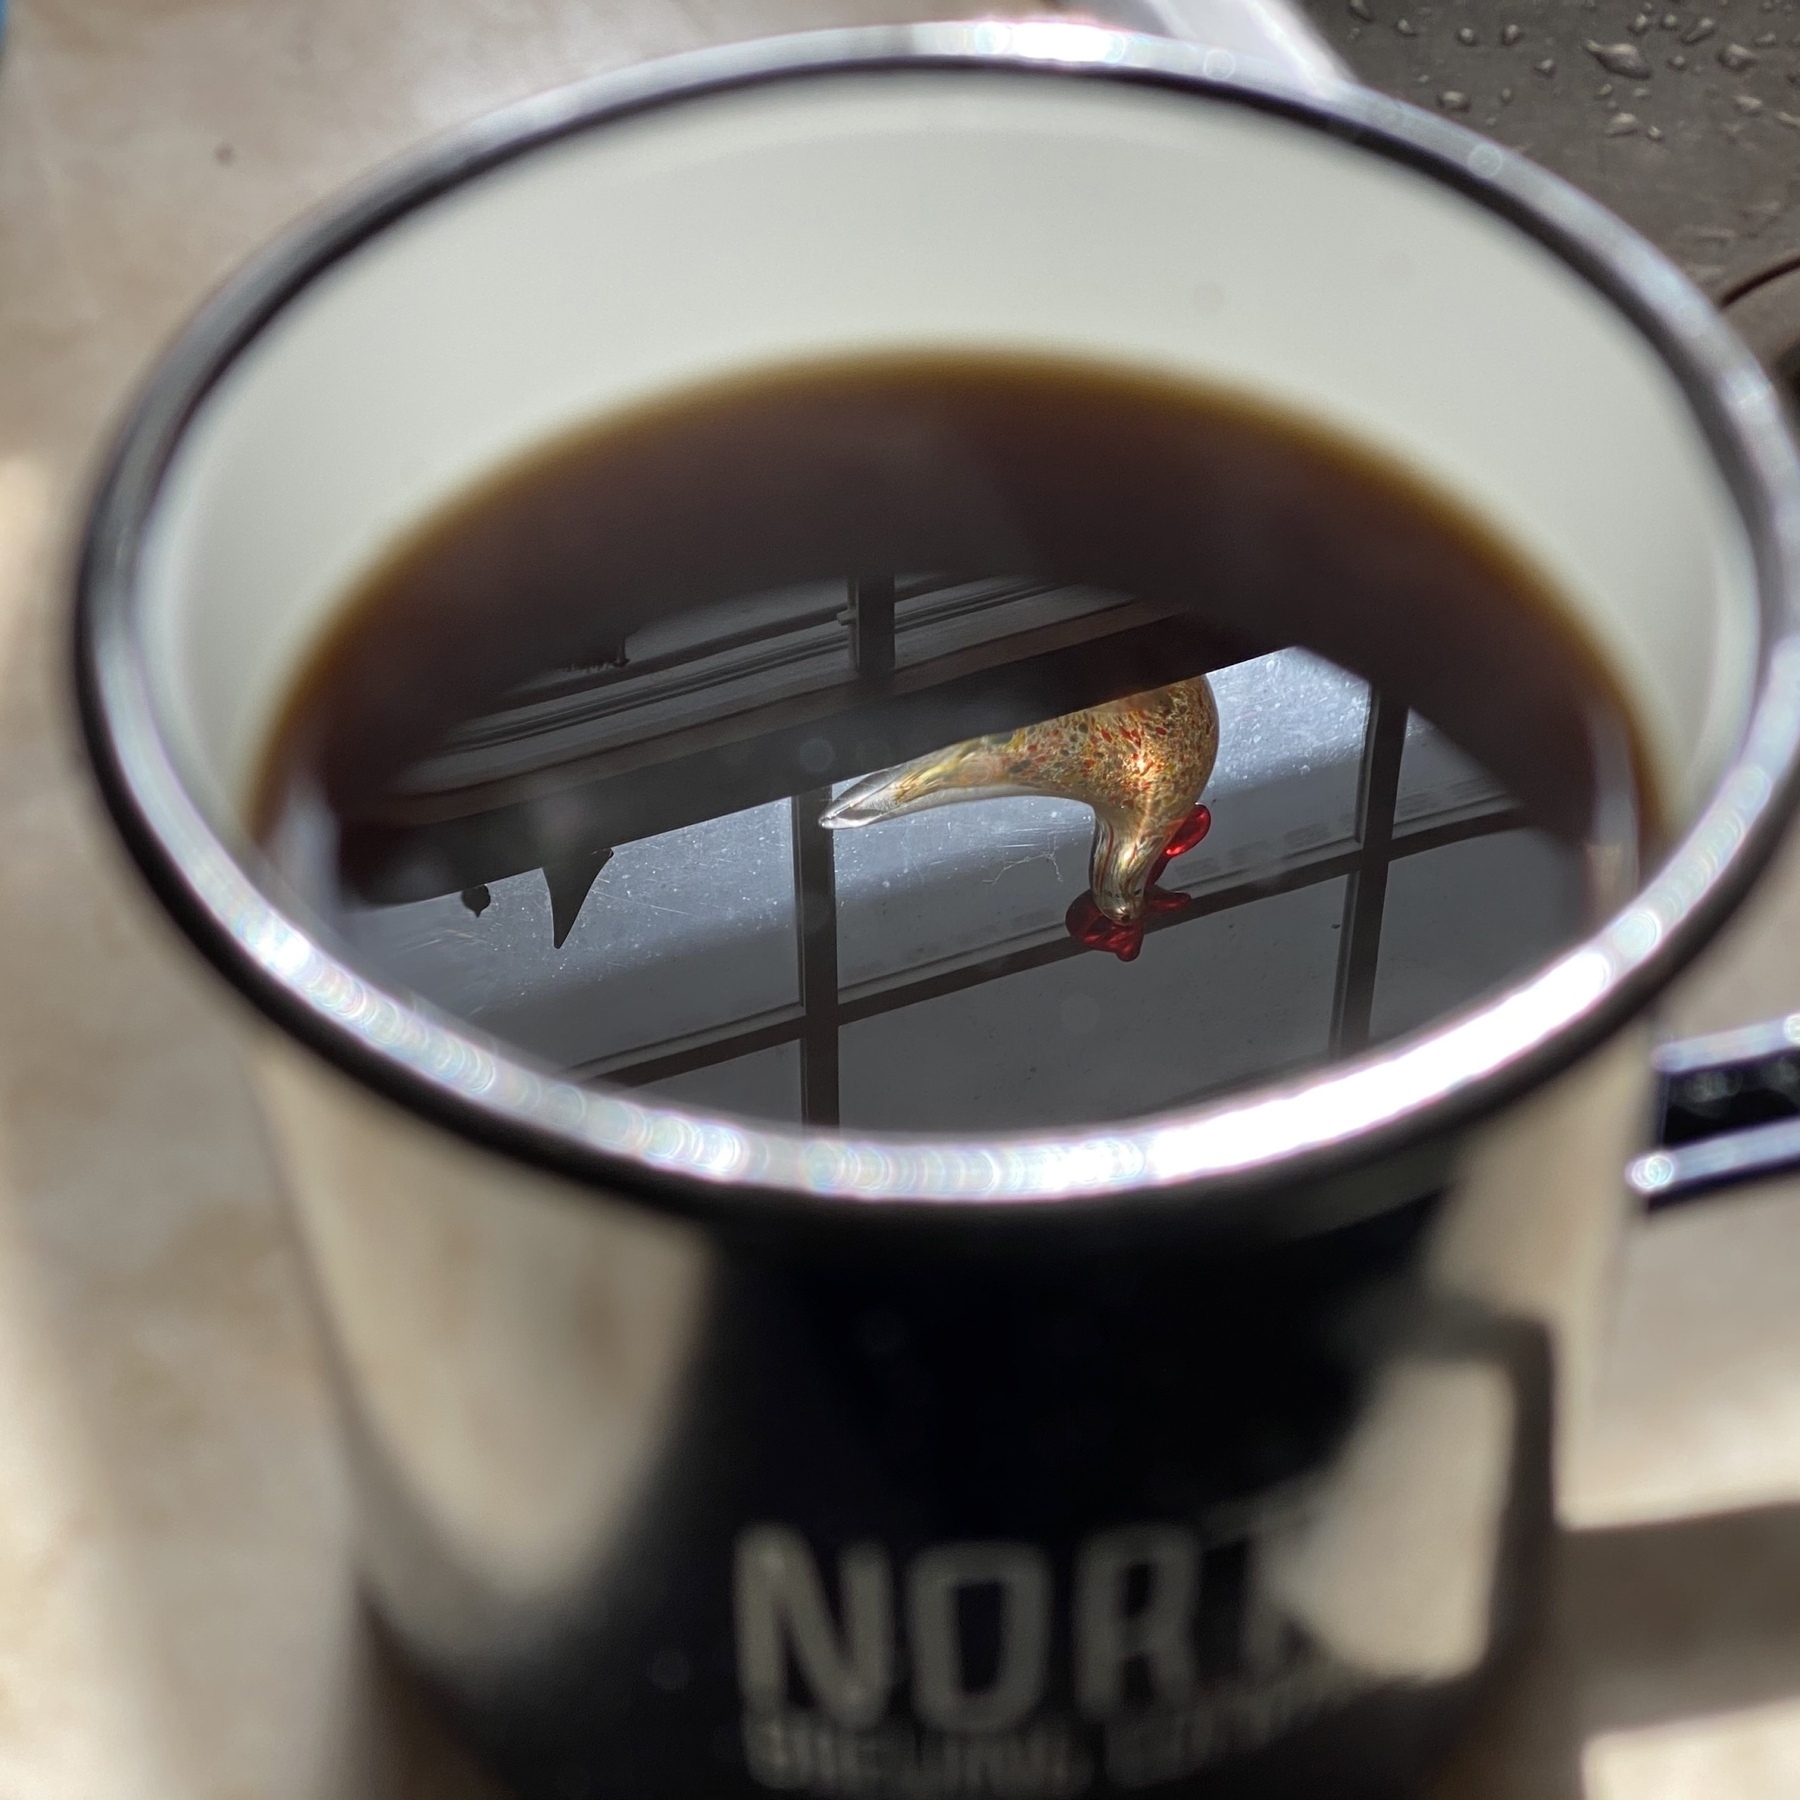 Reflection in coffee mug.